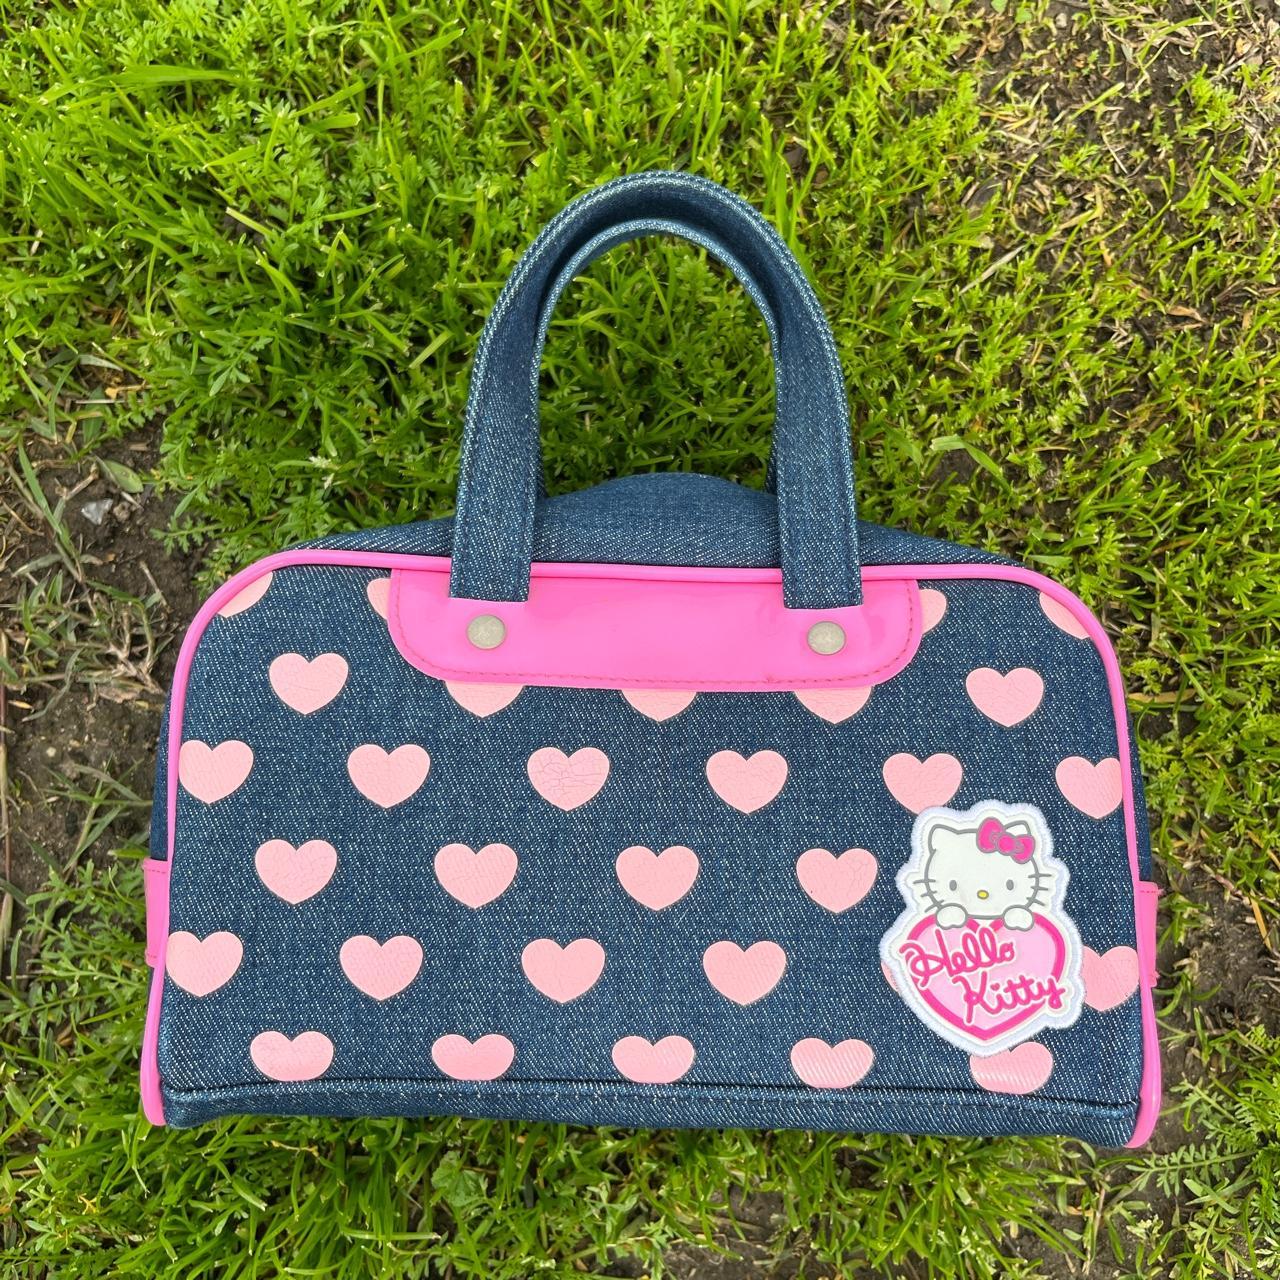 Vintage 2005 Sanrio Hello Kitty Pink Handbag Purse Y2K